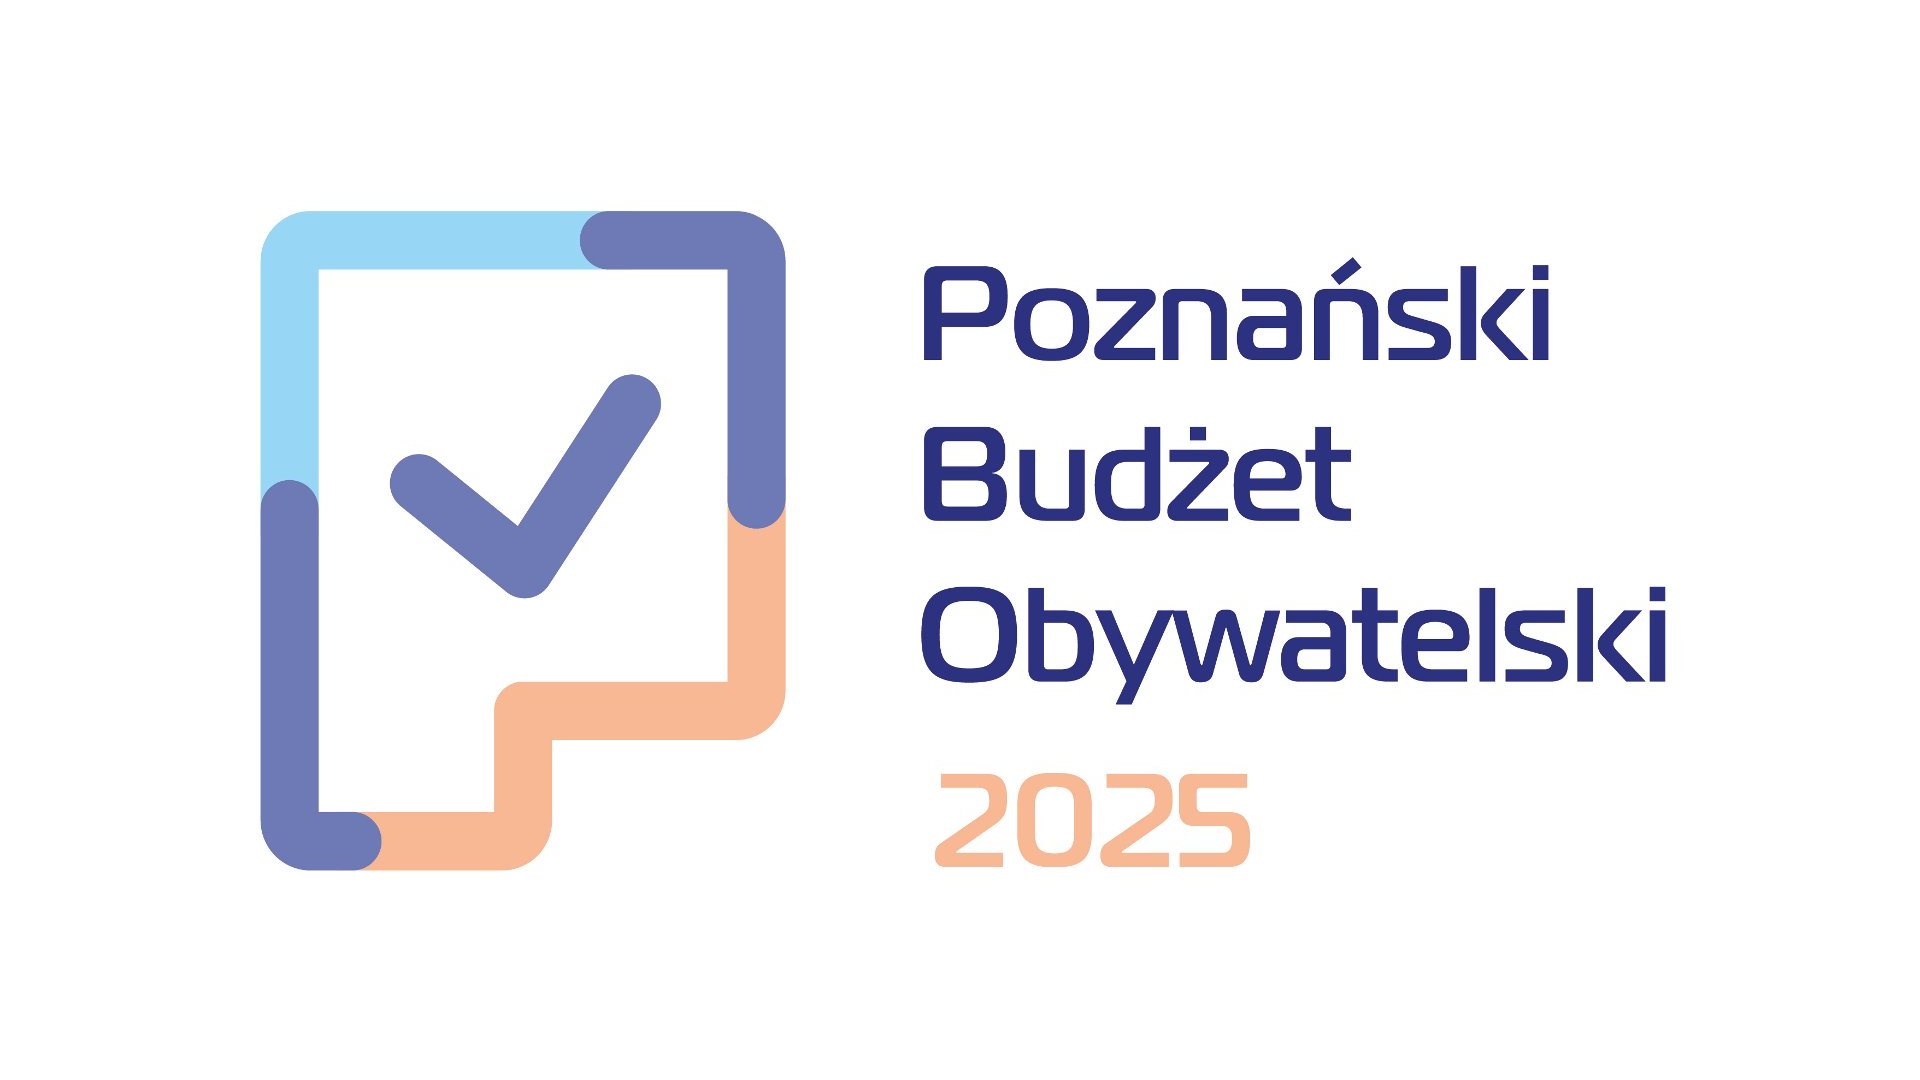 Logo PBO25. Przedstawia napis Poznański Budżet Obywatelski 2025 oraz rusunek kartki z tak zwanym ptaszkiem.